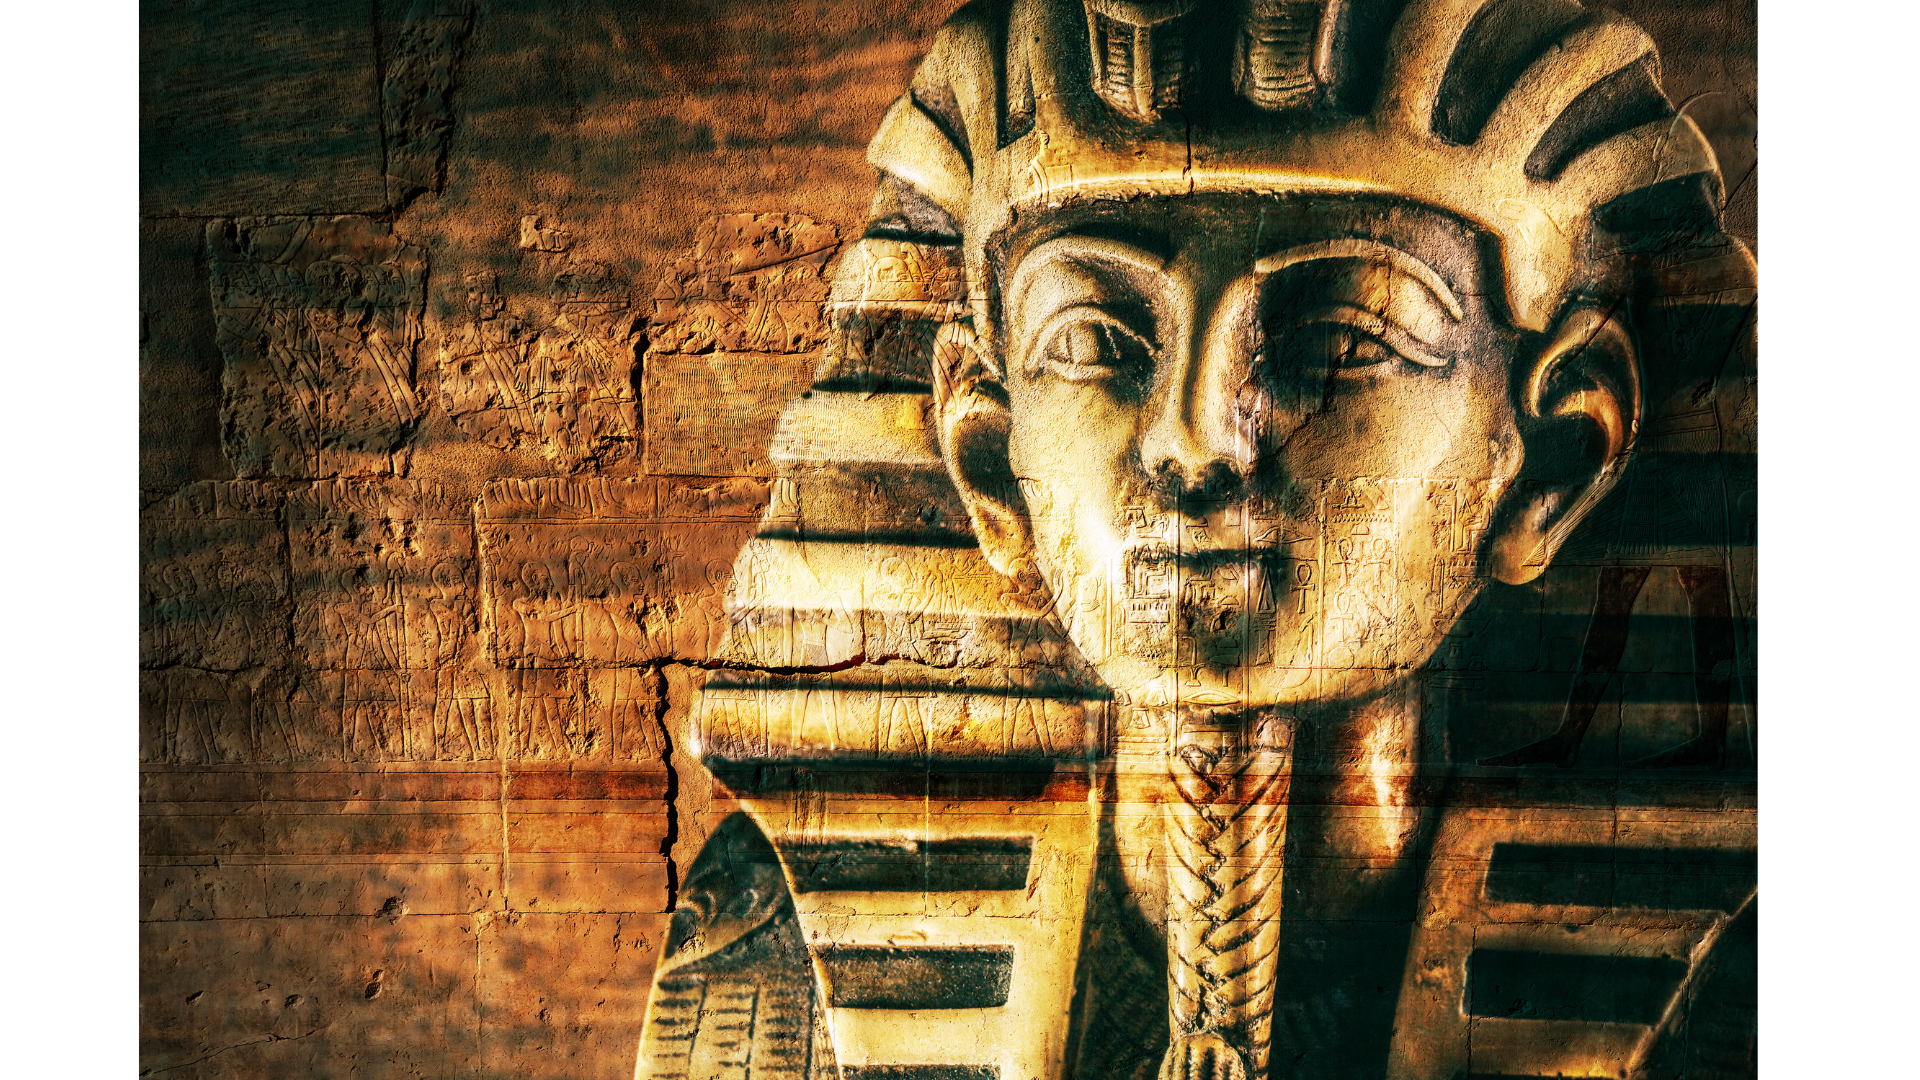 The head of an Egyptian Sarcophagus